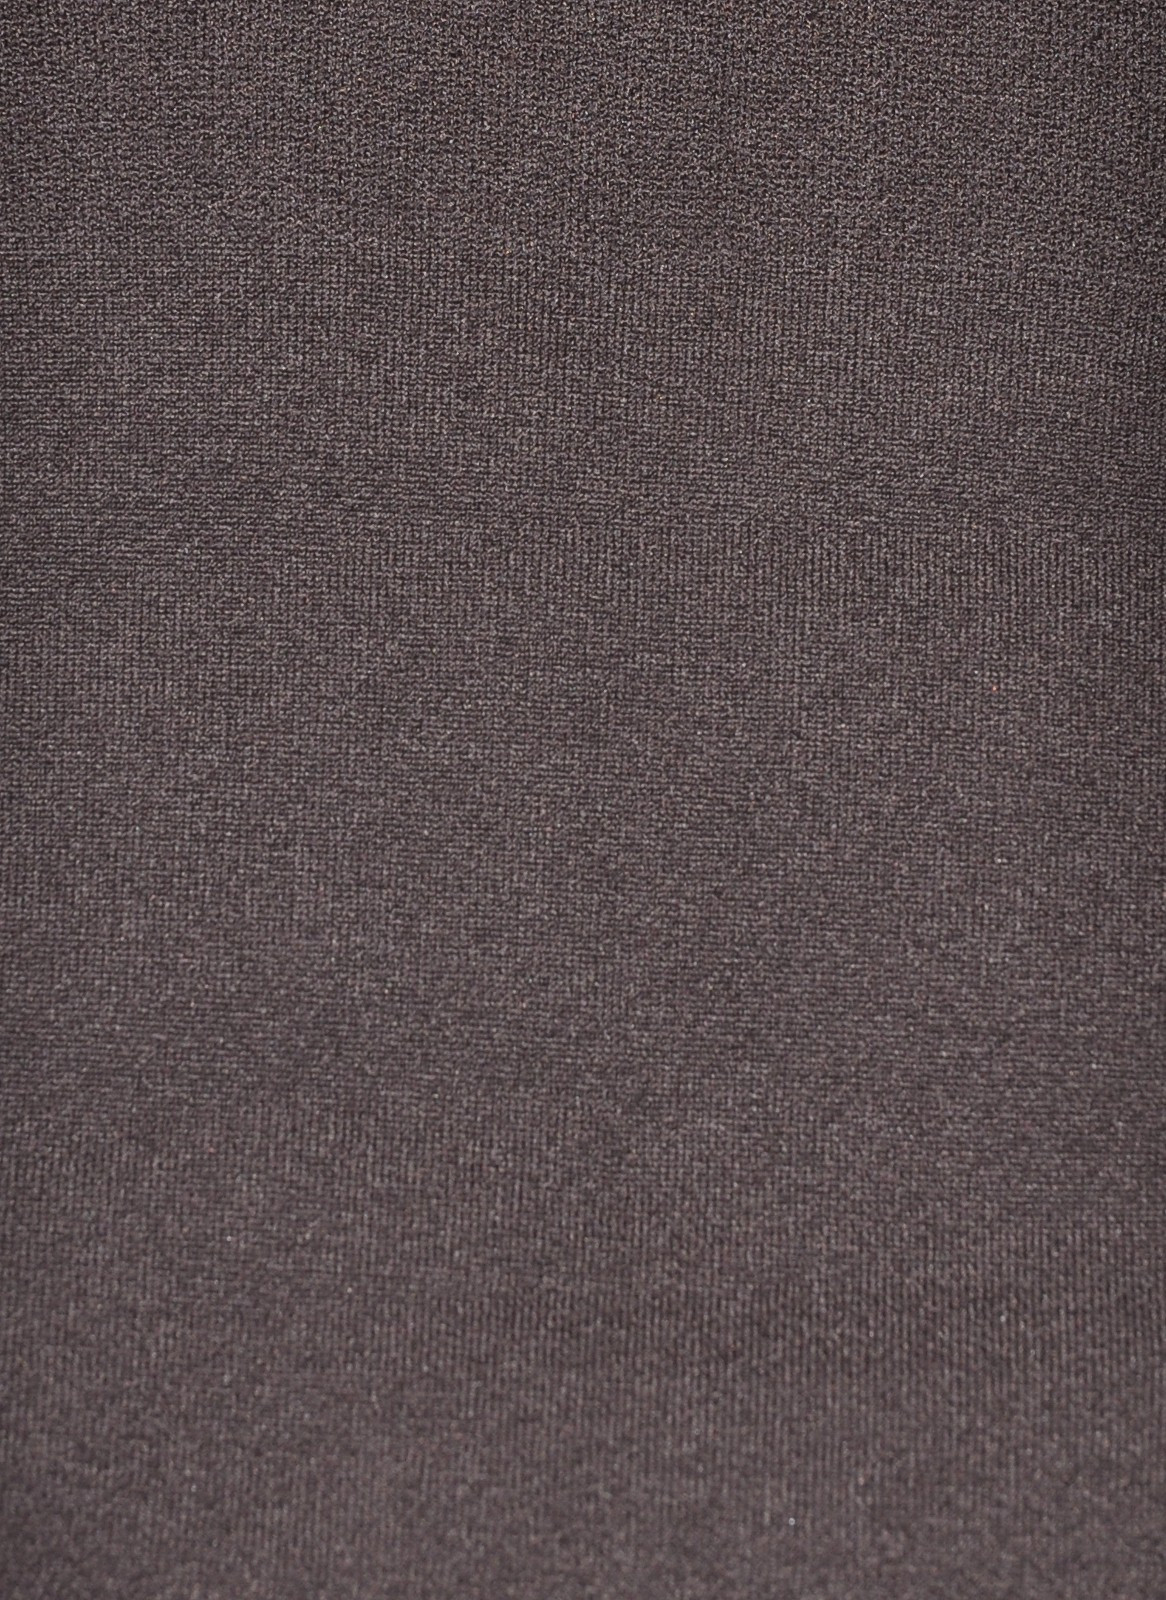 Dámské punčochové kalhoty model 17737336 Thermo Tights 600 den - Knittex Barva: nero, Velikost: 1/2-S/M